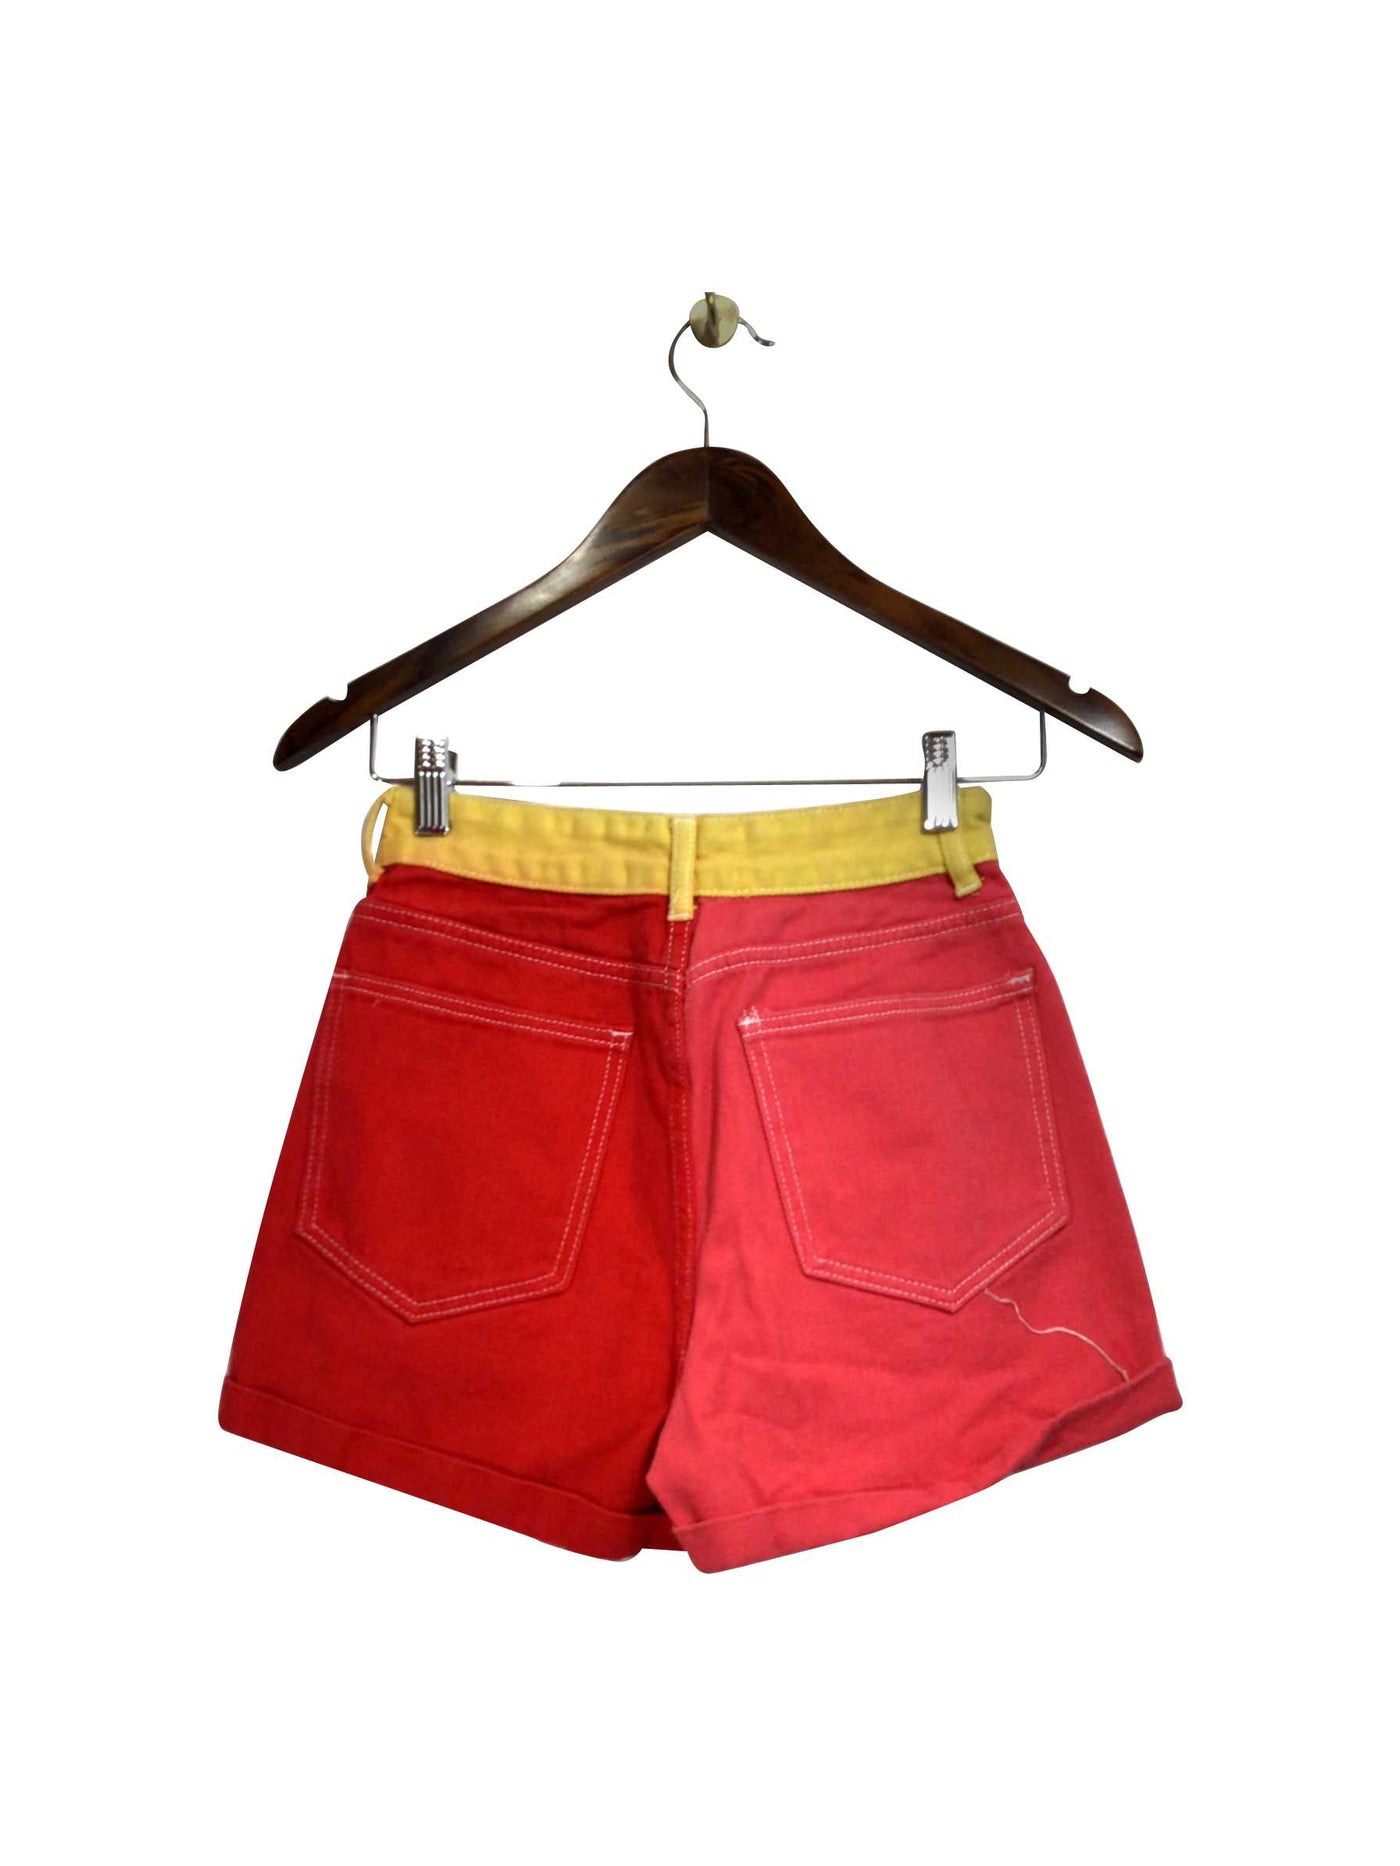 SHEIN Regular fit Pant Shorts in Orange  -  XS  5.99 Koop